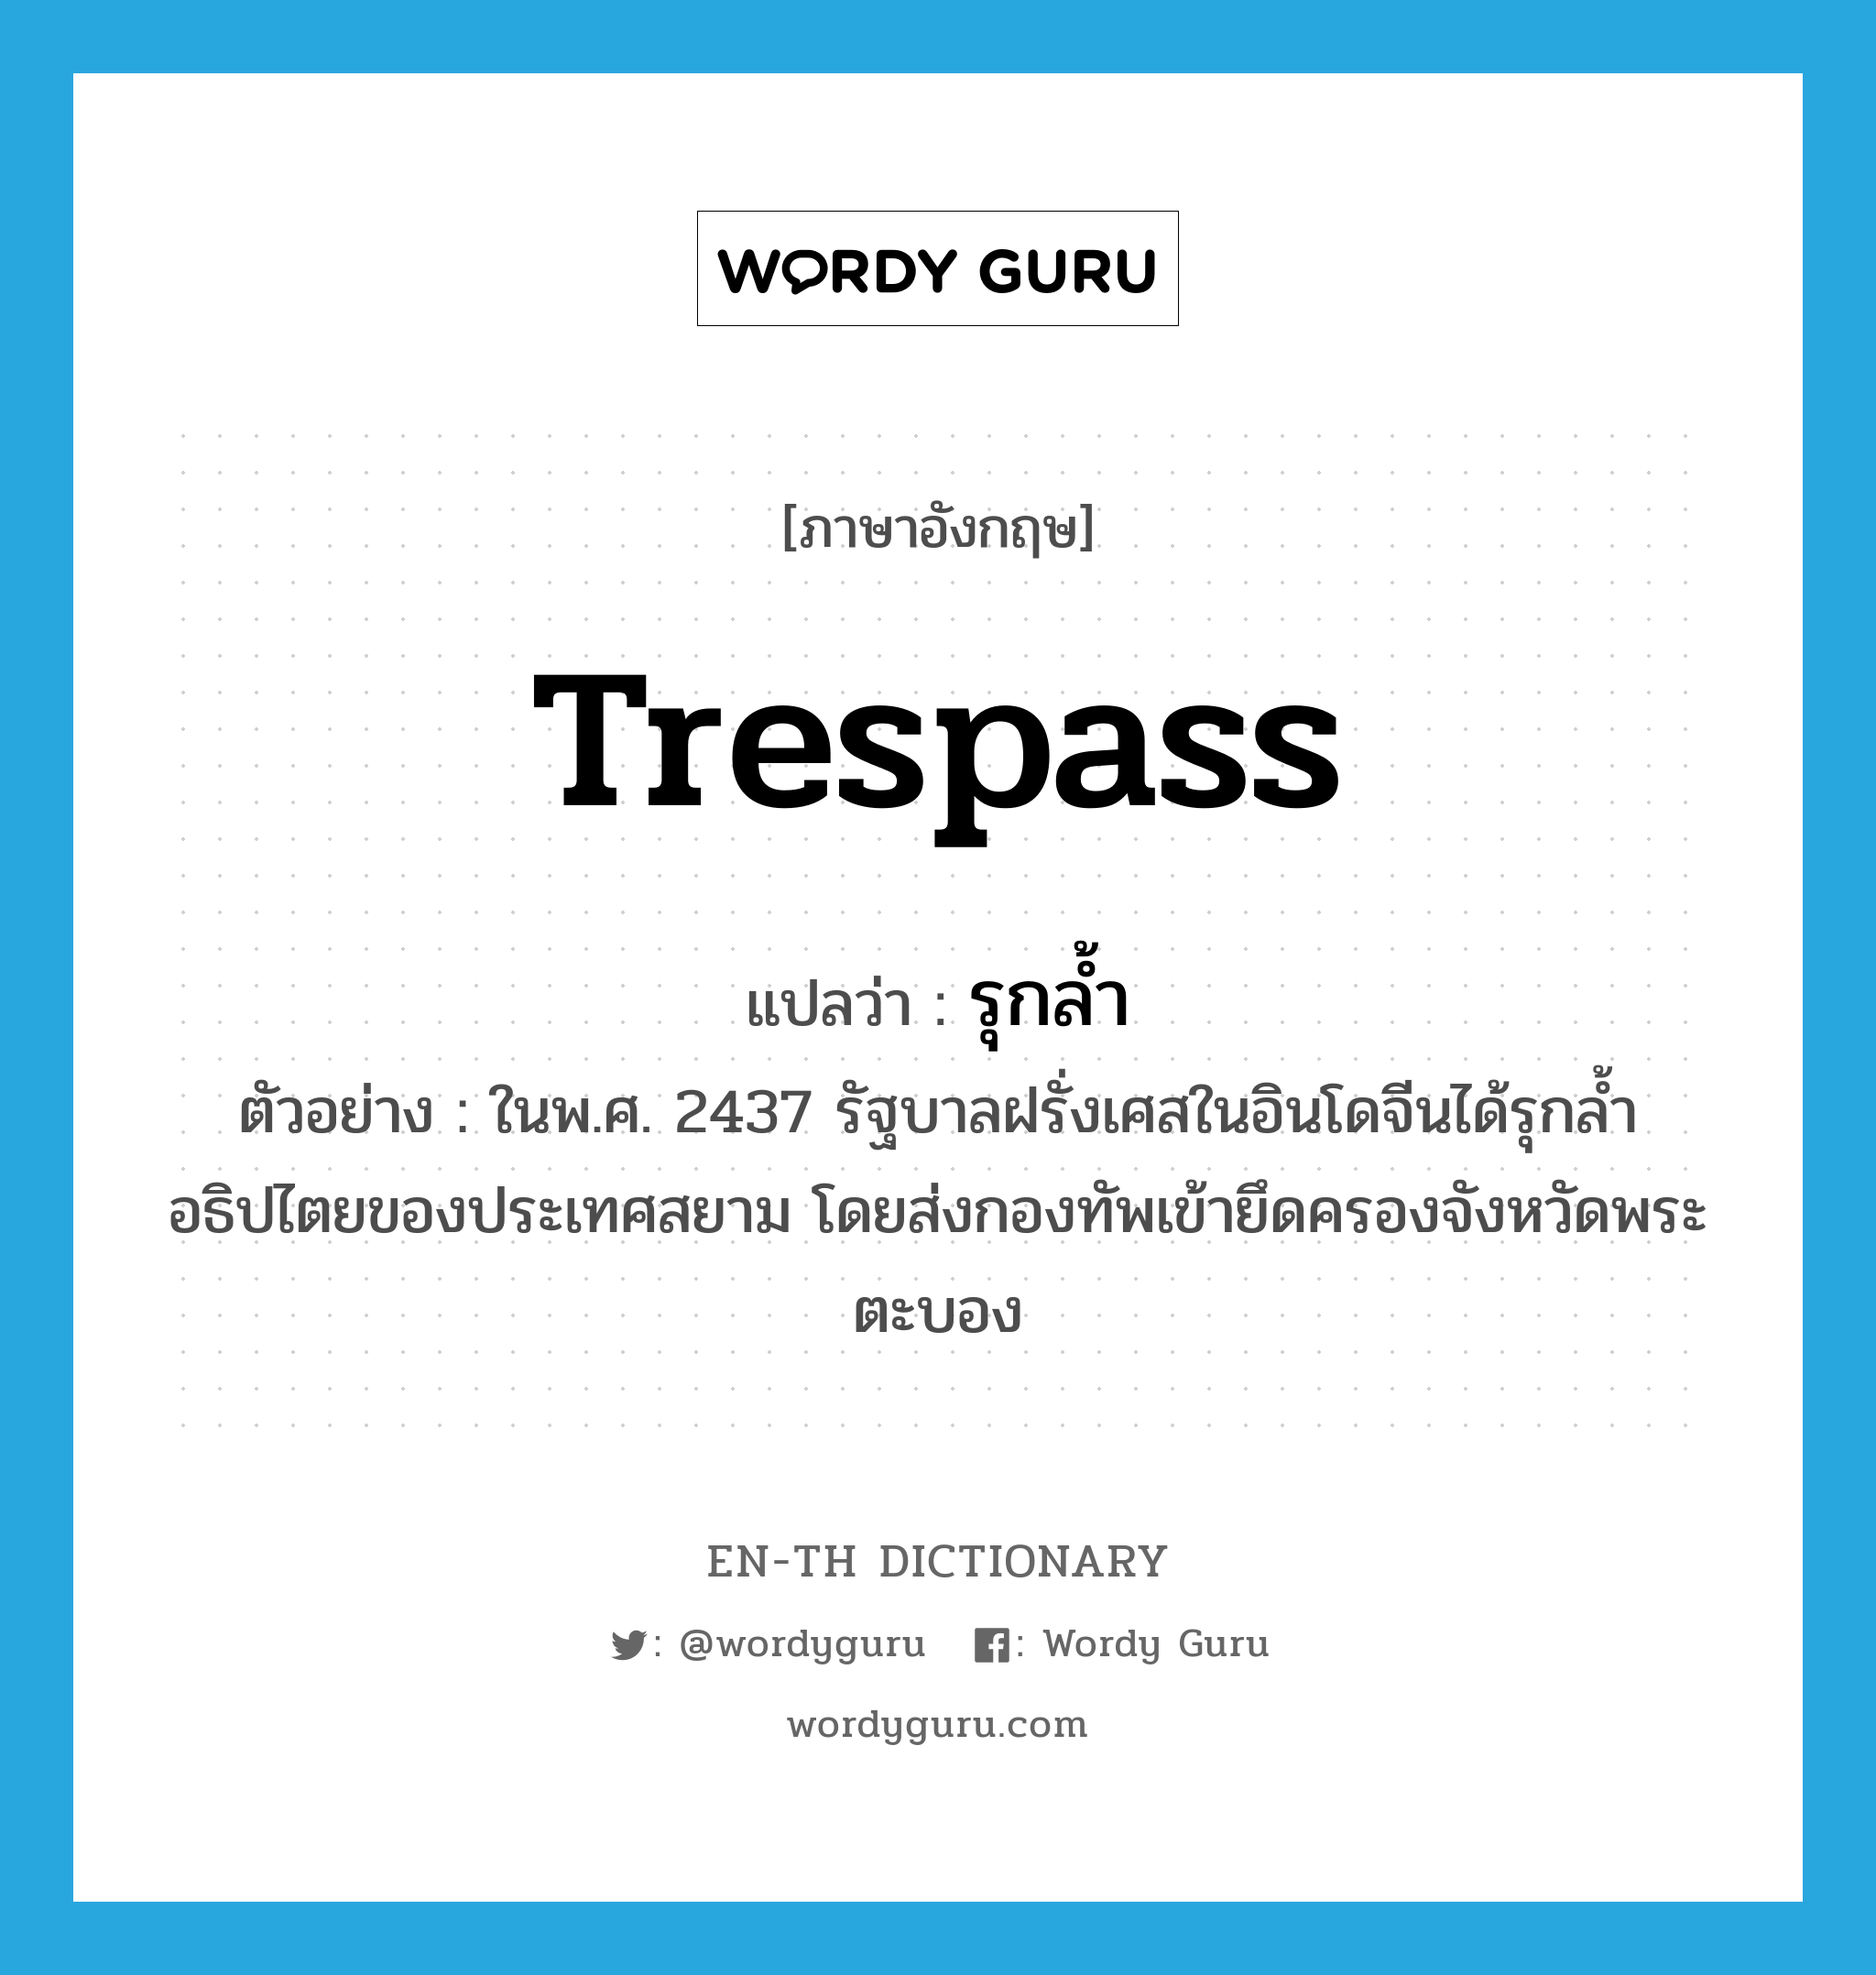 trespass แปลว่า?, คำศัพท์ภาษาอังกฤษ trespass แปลว่า รุกล้ำ ประเภท V ตัวอย่าง ในพ.ศ. 2437 รัฐบาลฝรั่งเศสในอินโดจีนได้รุกล้ำอธิปไตยของประเทศสยาม โดยส่งกองทัพเข้ายึดครองจังหวัดพระตะบอง หมวด V